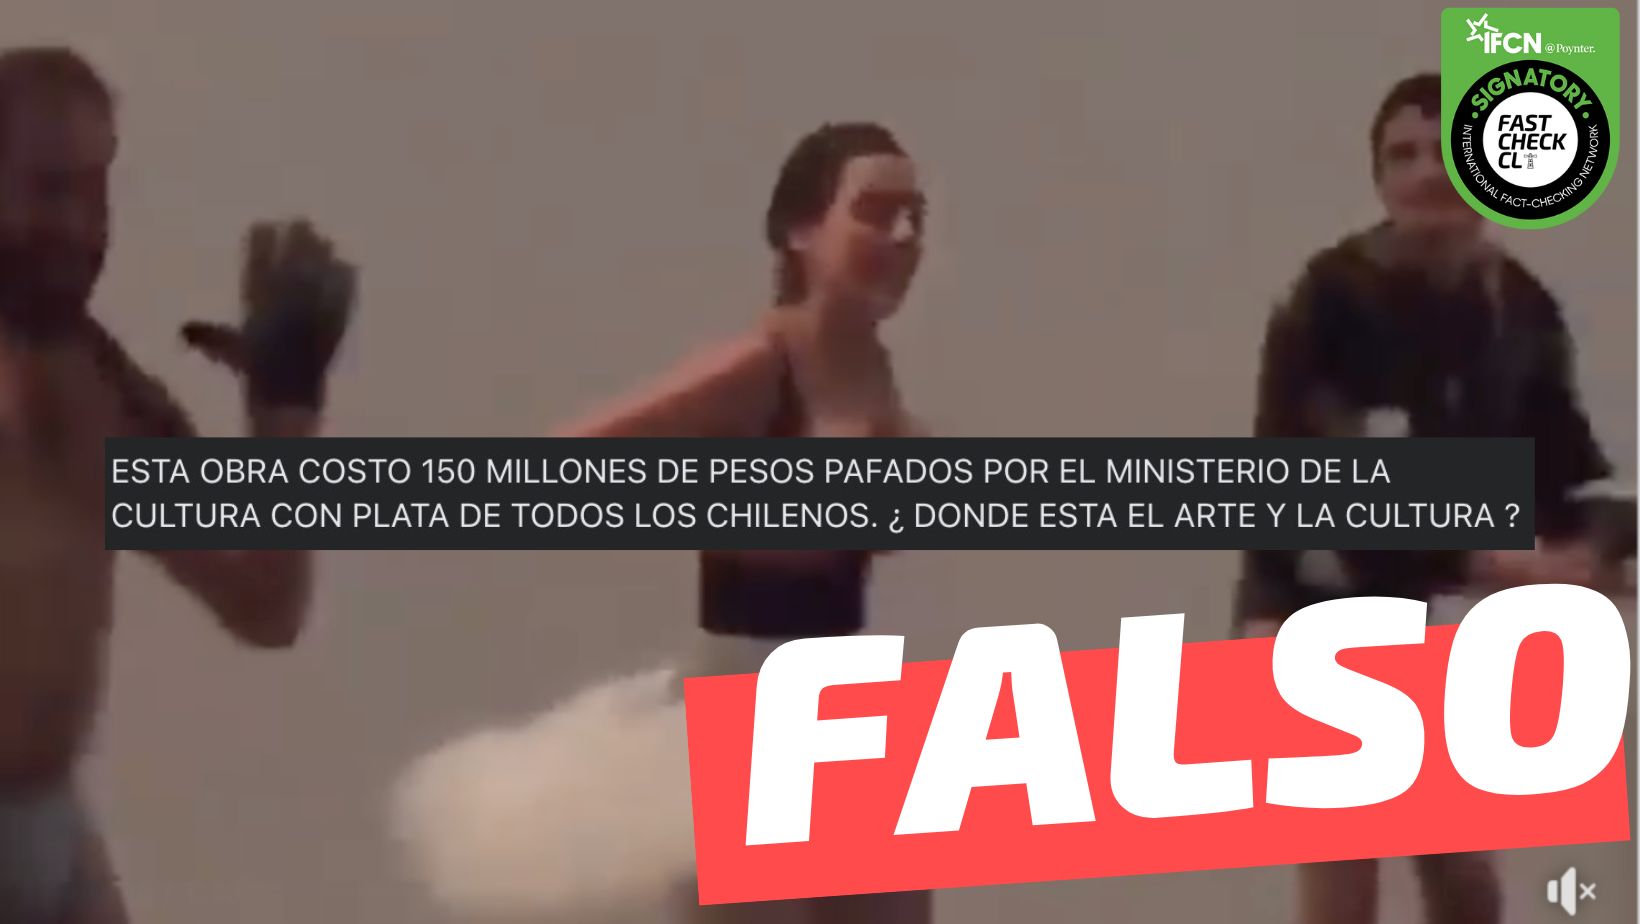 You are currently viewing (Video) “Esta obra cost贸 150 millones de pesos pagados por el Ministerio de Cultura con la plata de todos los chilenos”: #Falso